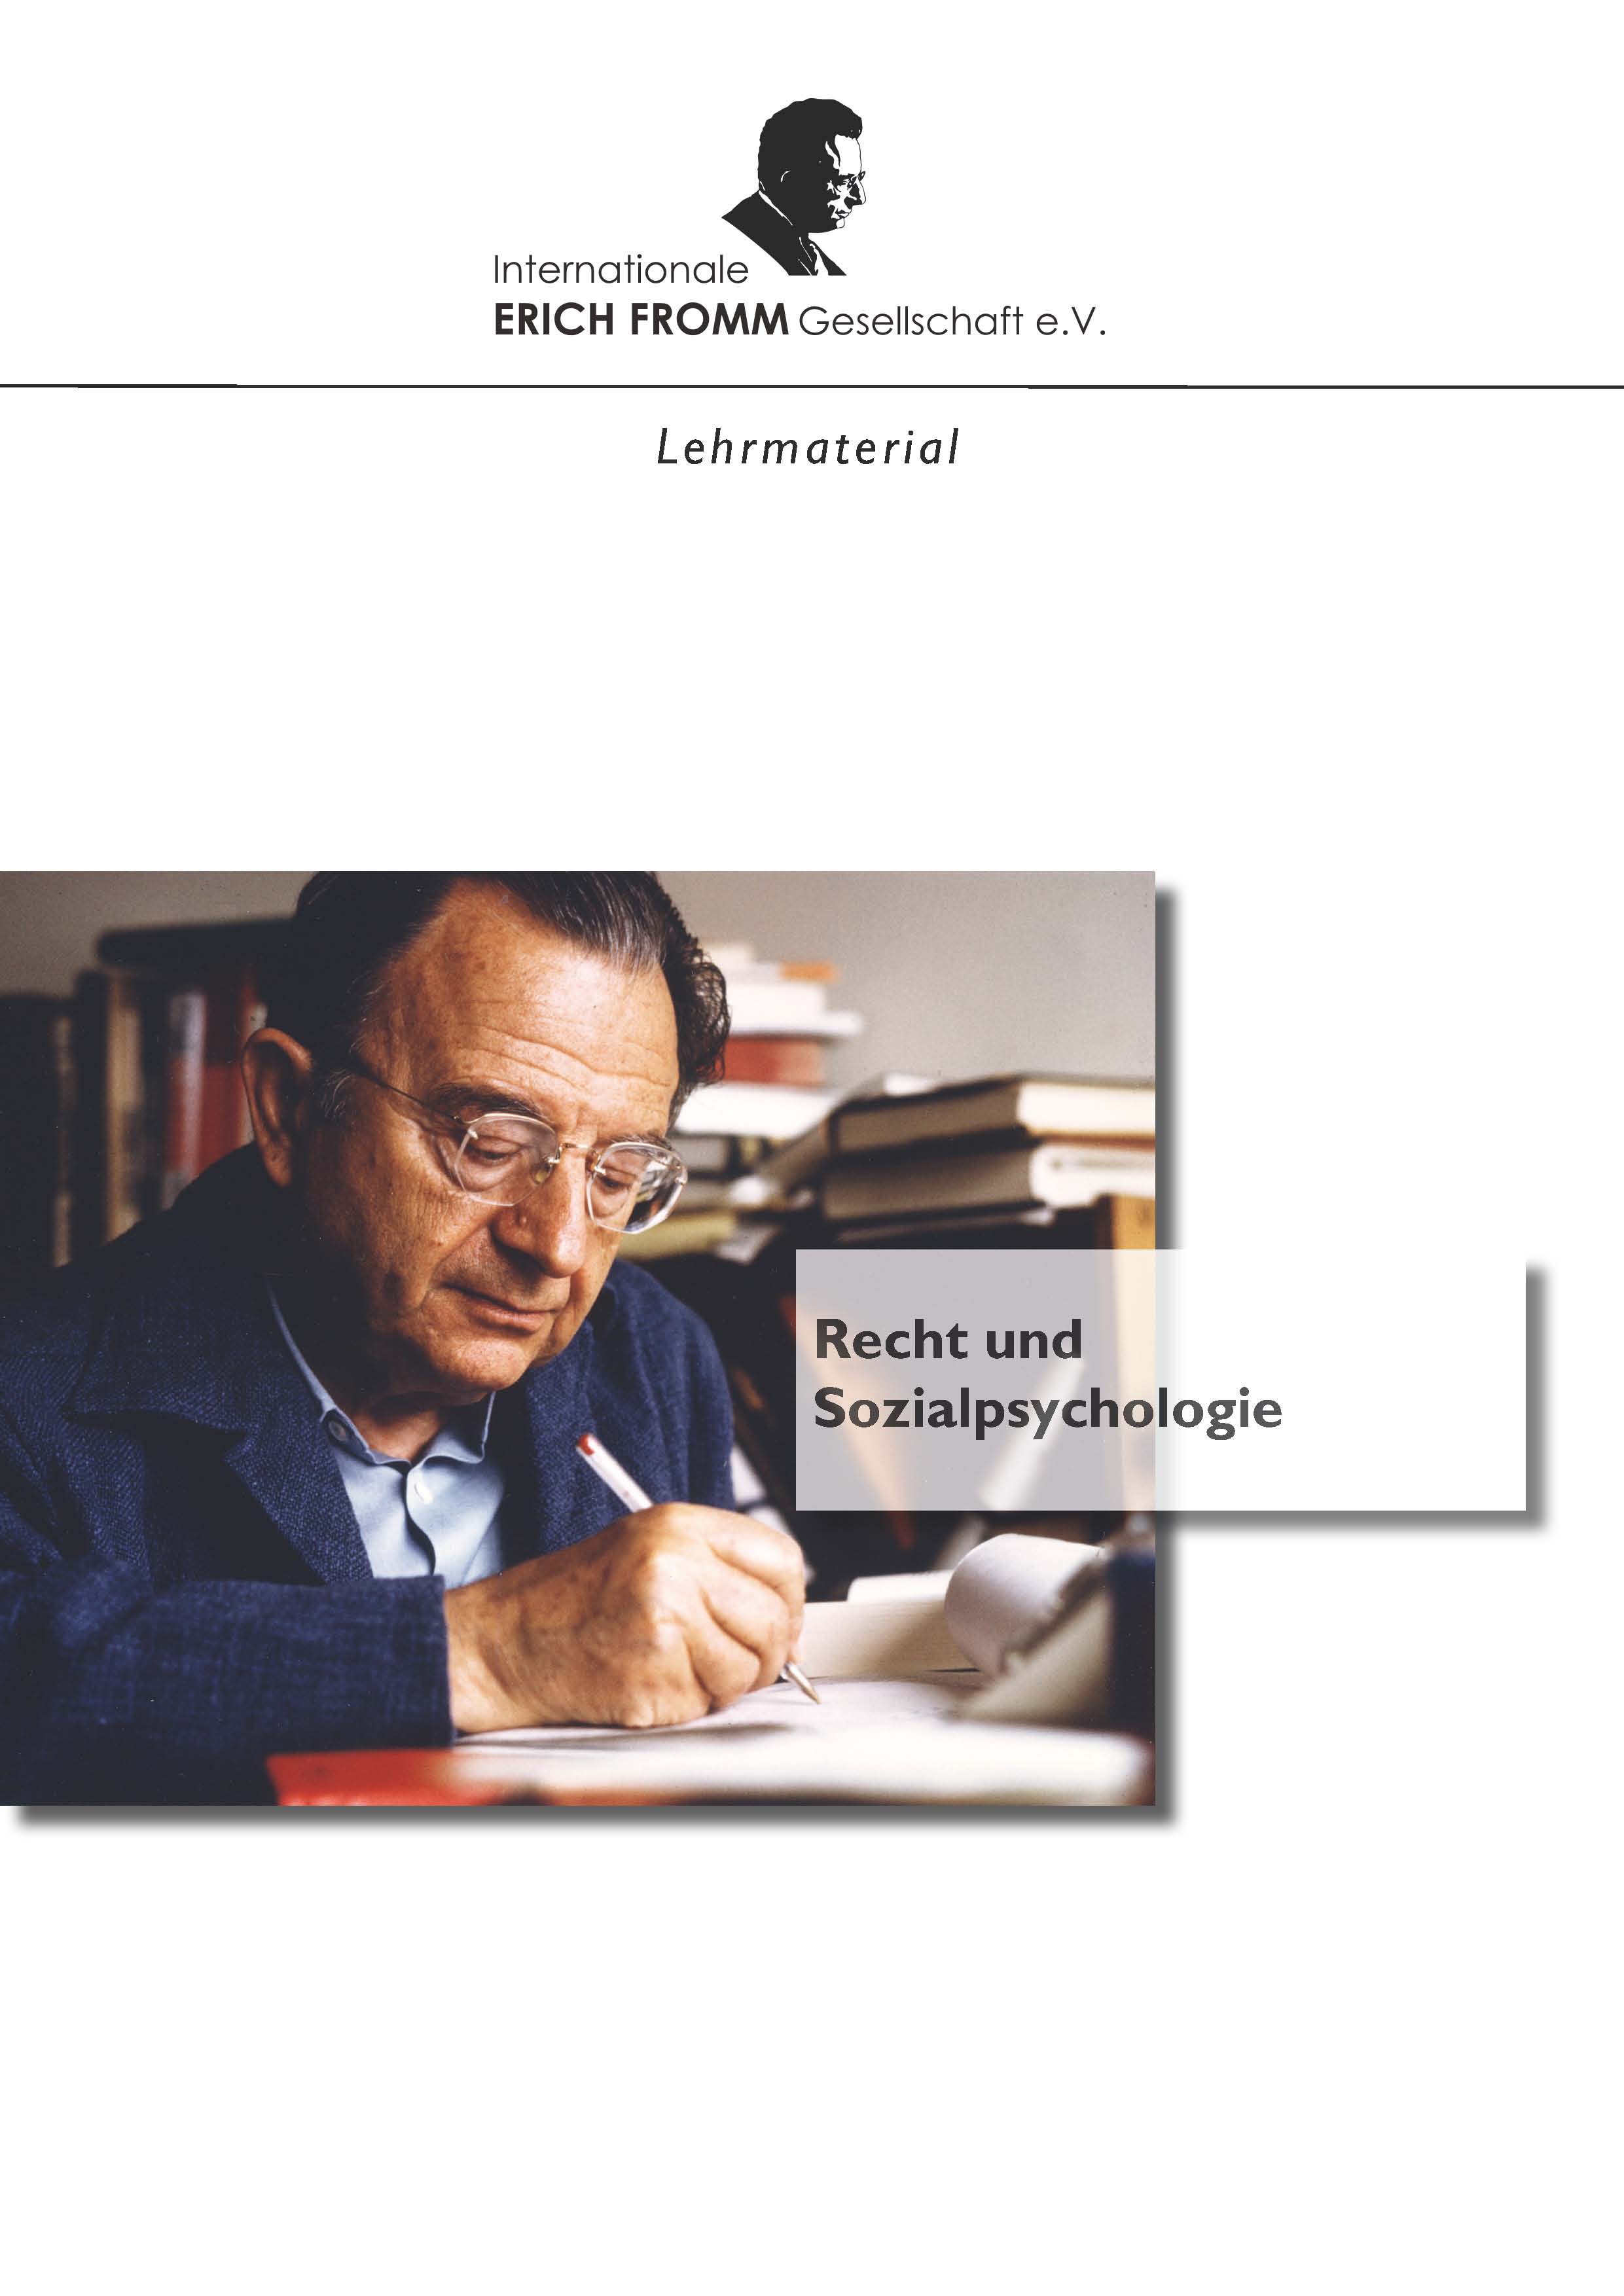 Recht und Sozialpsychologie (PDF)